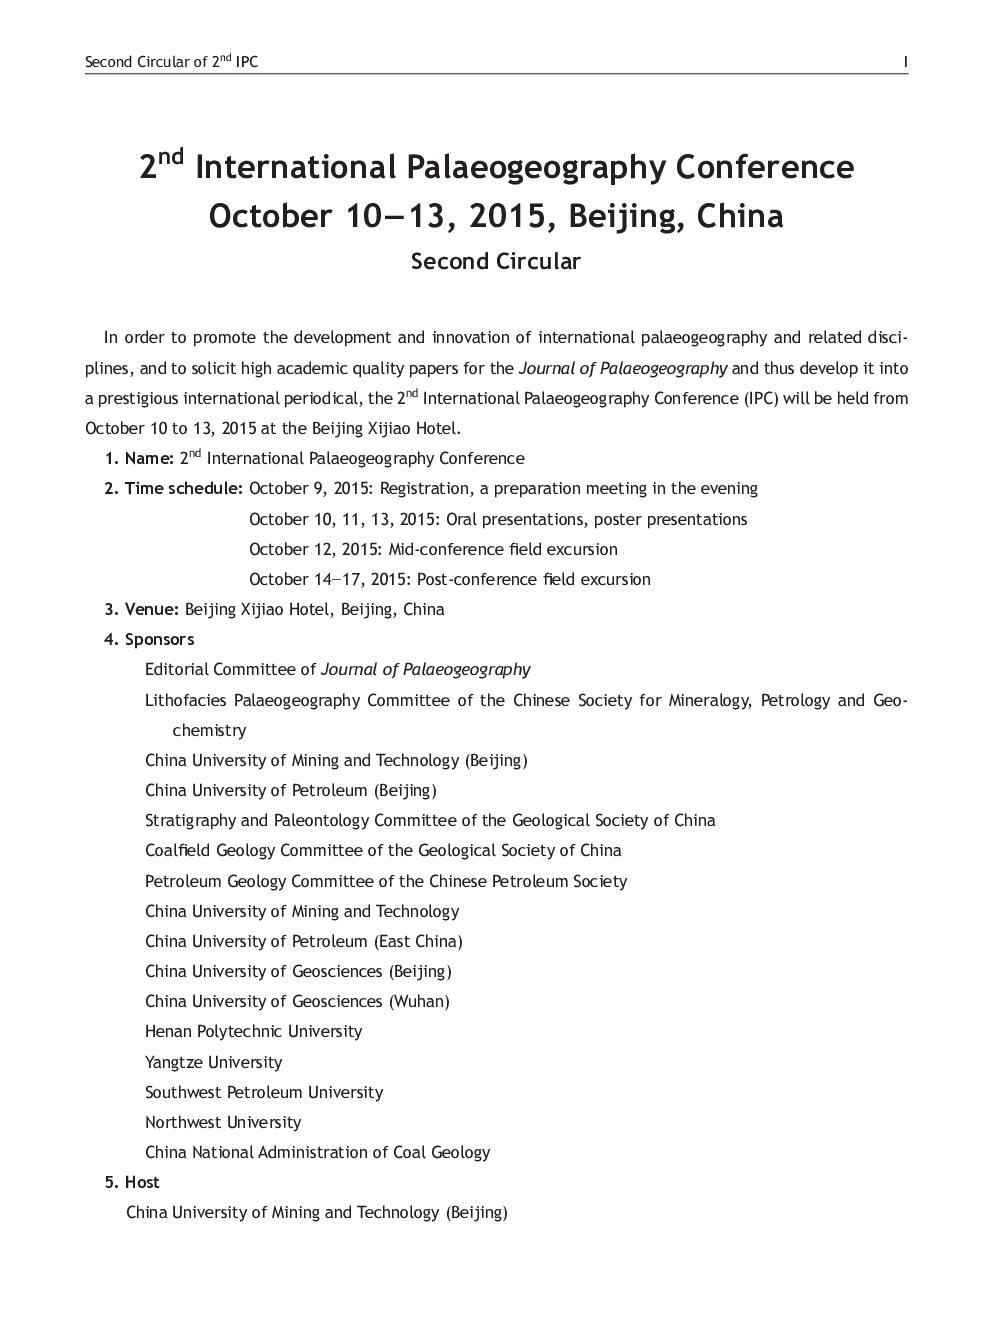 دومین کنفرانس بین المللی پالئوئوگرافی 10-13 اکتبر 2015، پکن، چین 